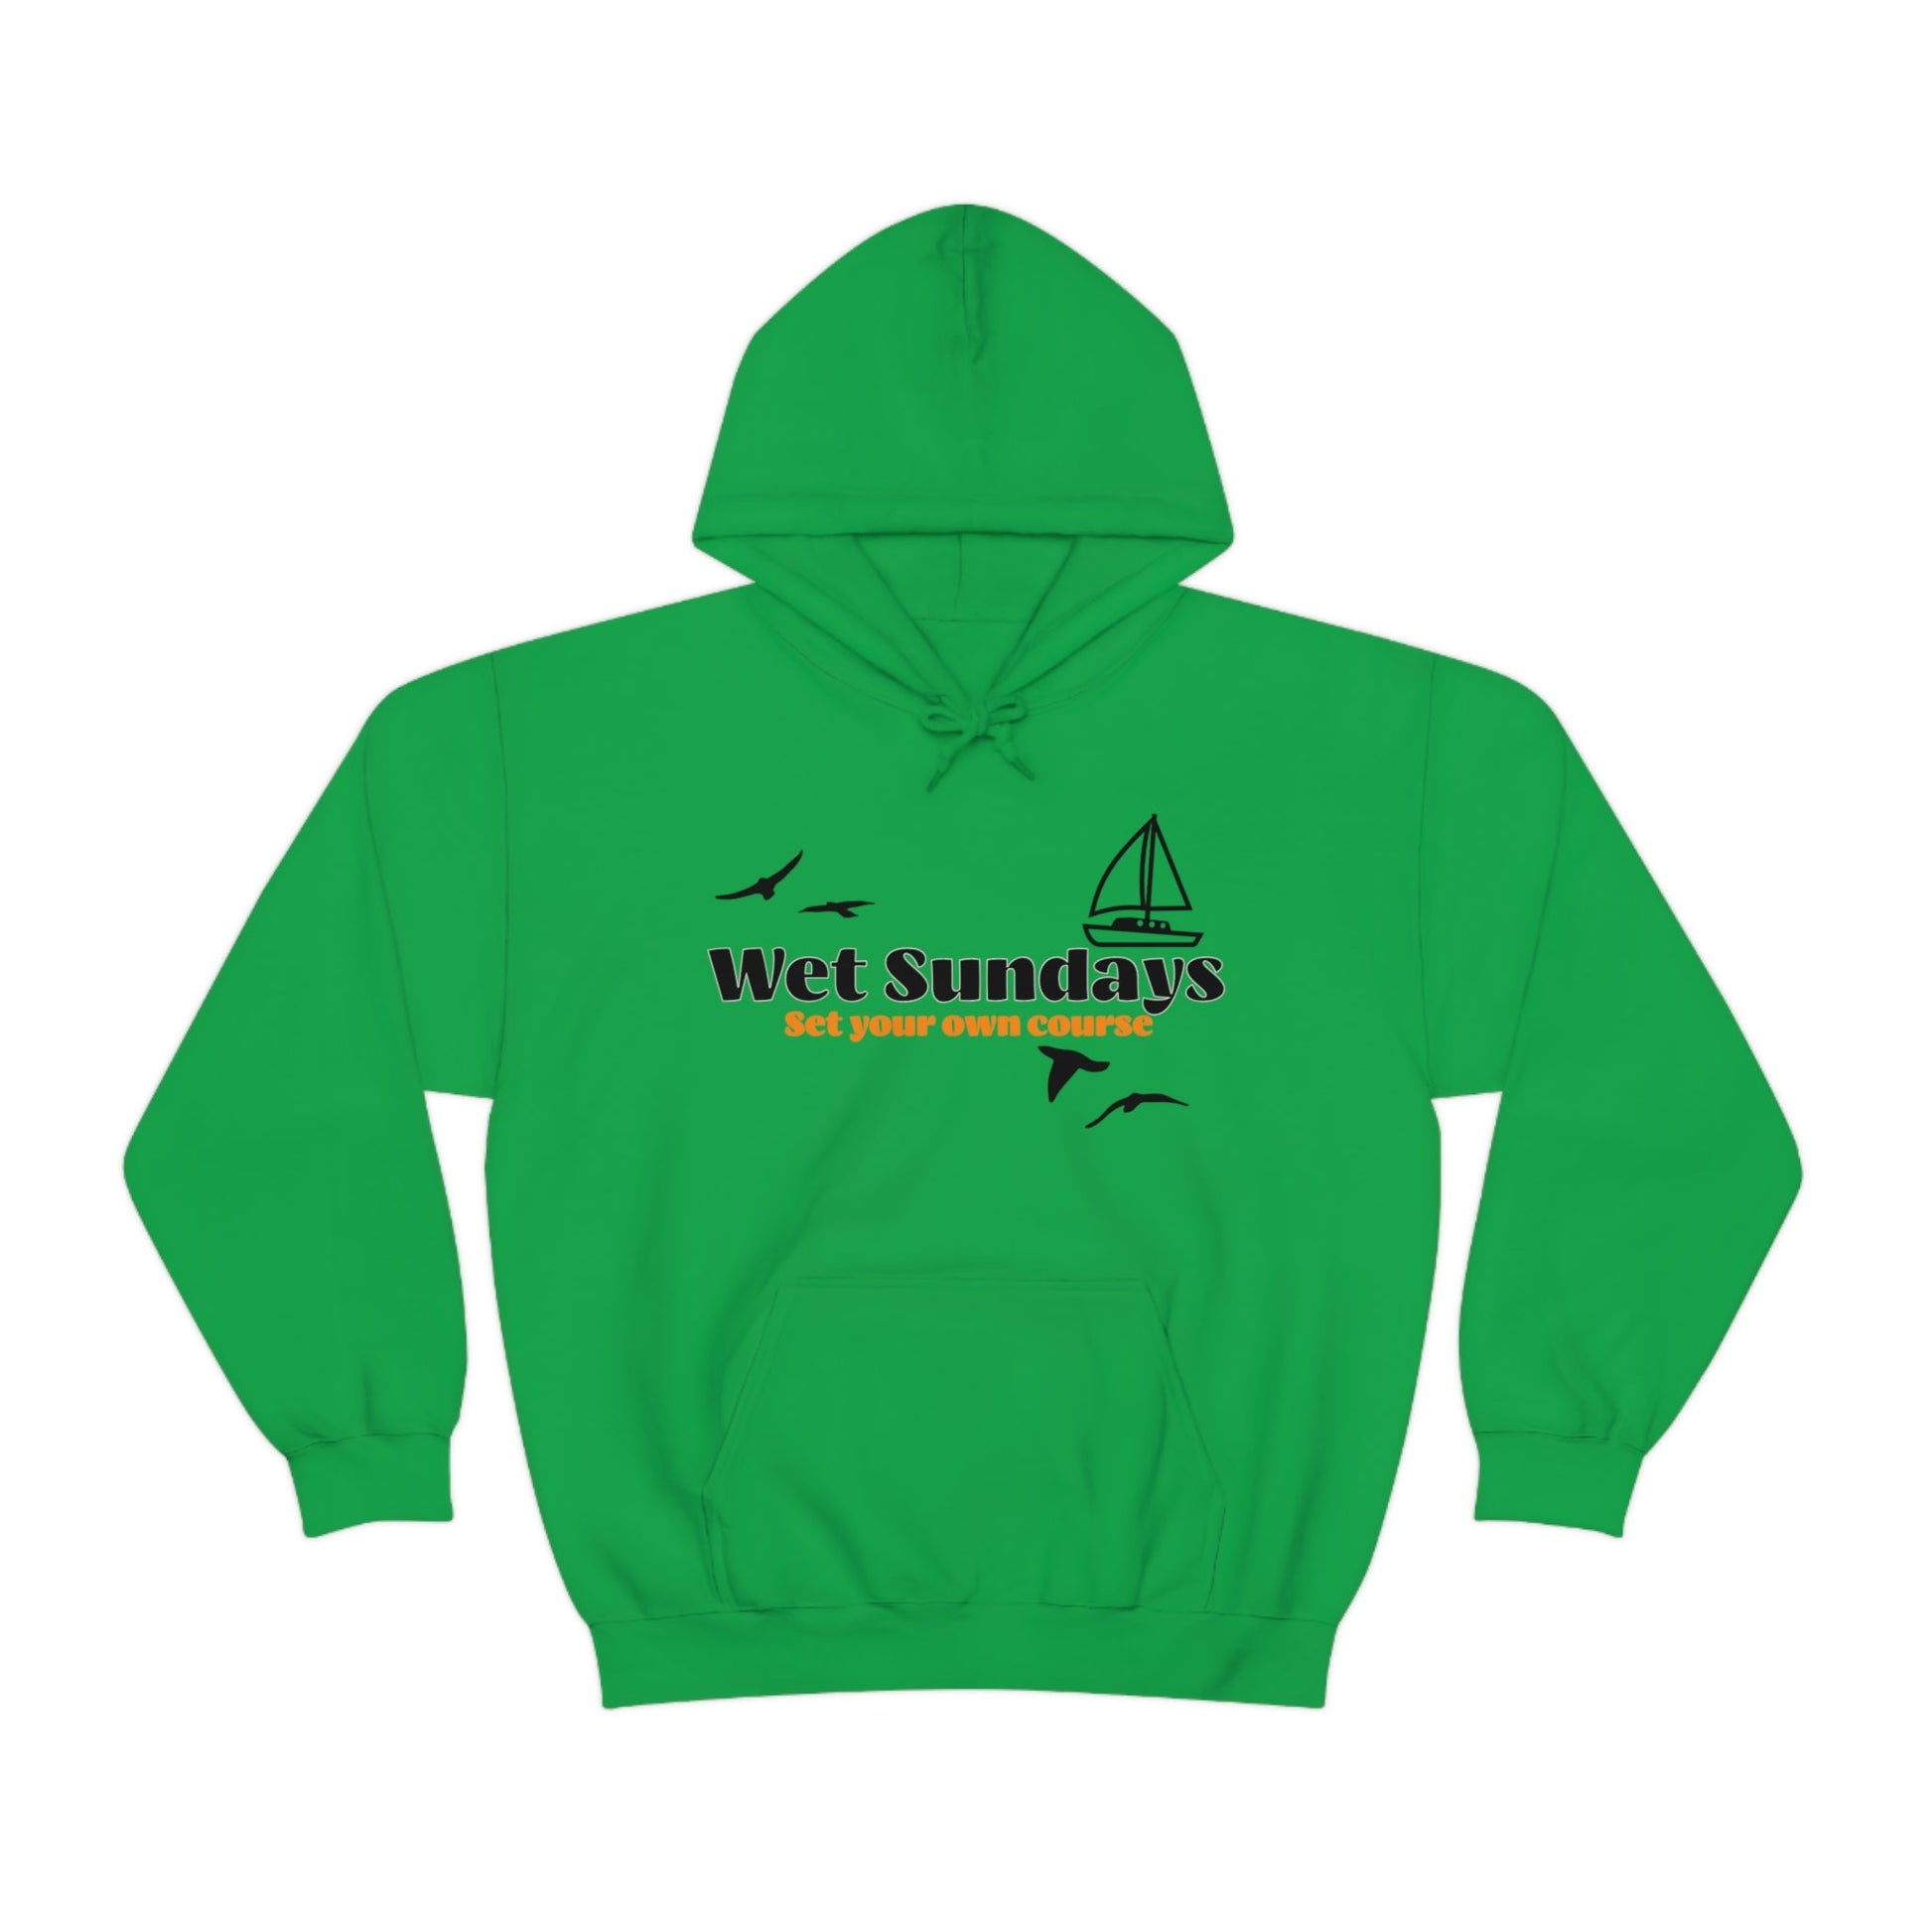 Green Graphic Hoodie - Wet Sundays